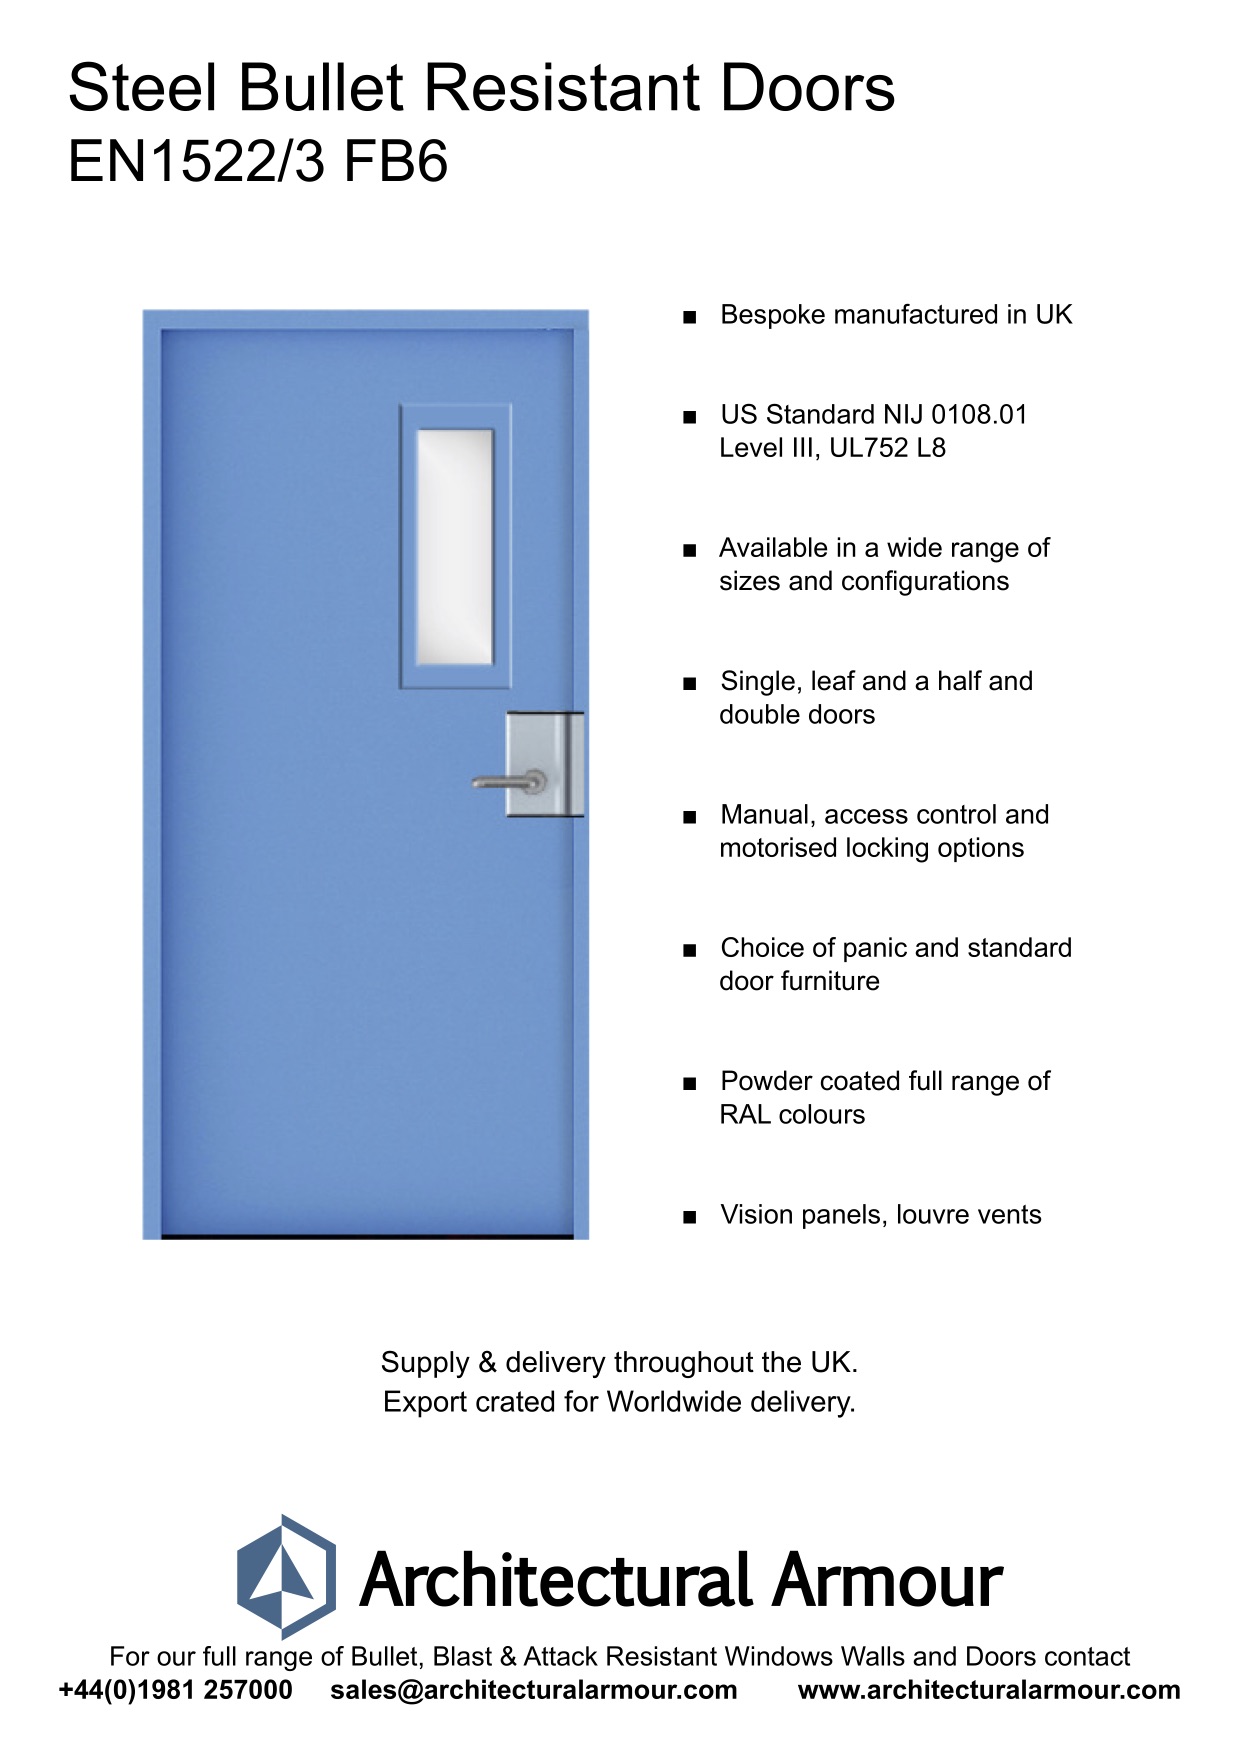 EN1522-3-FB6-Single-Slim-Vision-Panel-Bullet-Resistant-Steel-Door